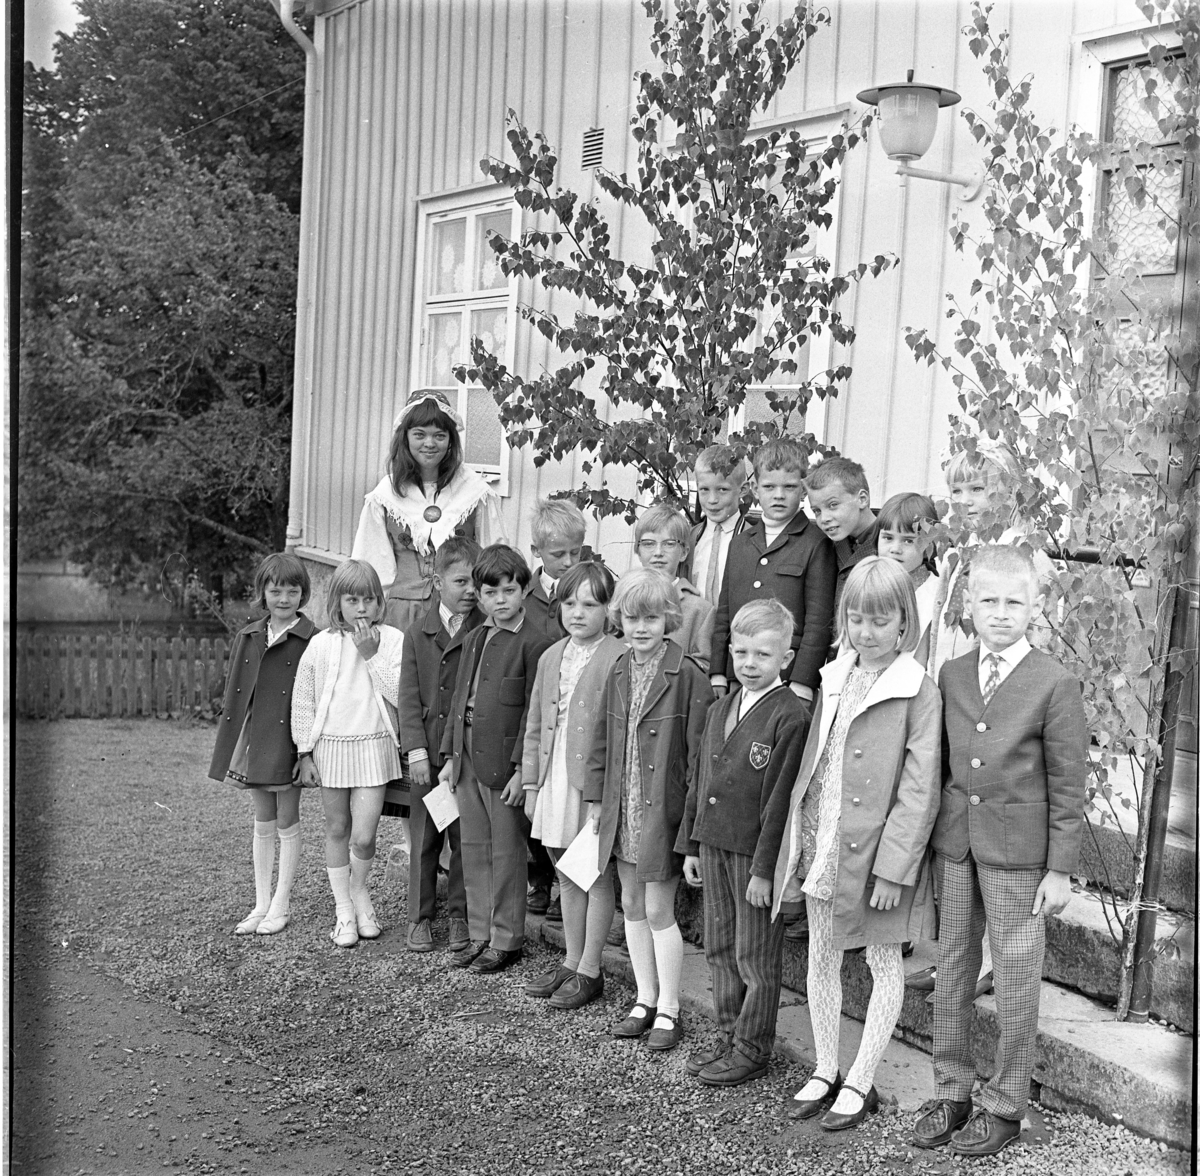 Skolavslutning med små barn i Ölmstad, sista skolklassen? Lärarinnan som bär folkdräkt heter möjligen Frilund. De står finklädda nedanför en trappa pyntad med björkris.